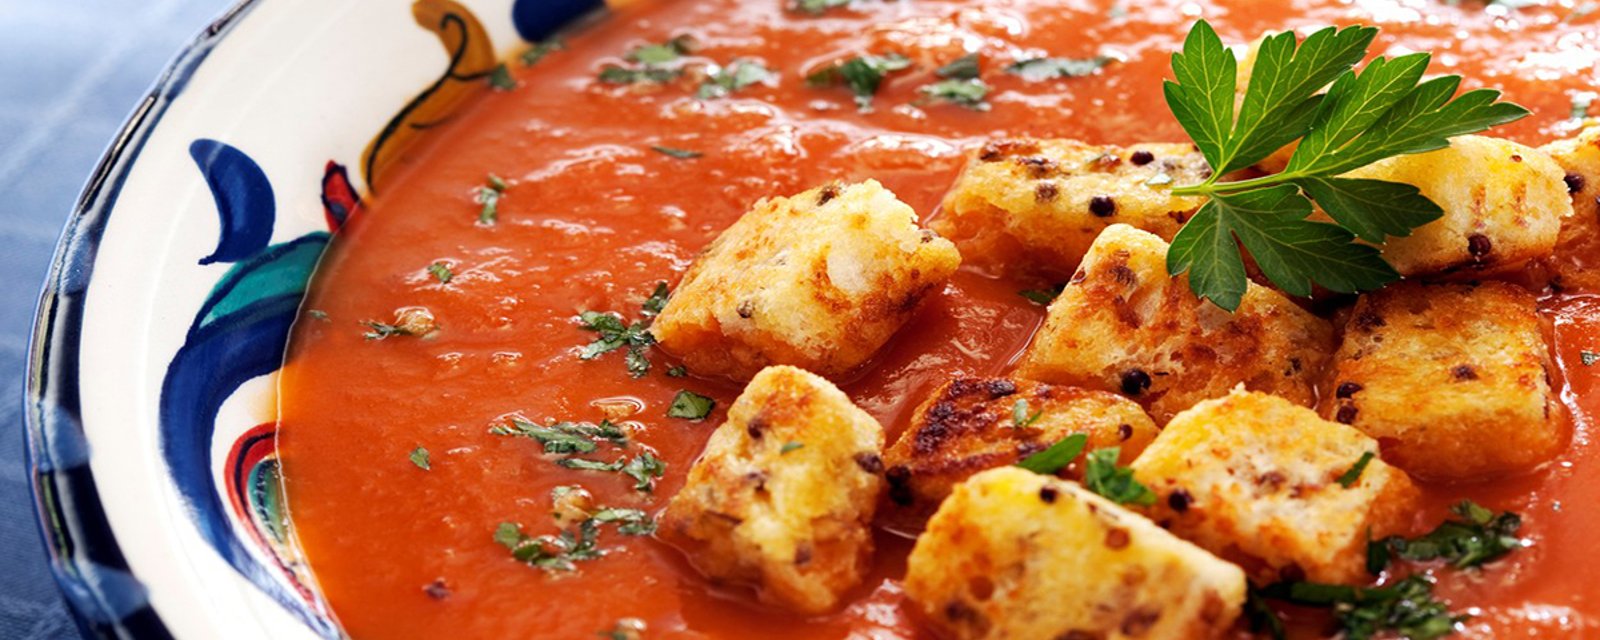 Velouté de tomates et de saucisses italiennes